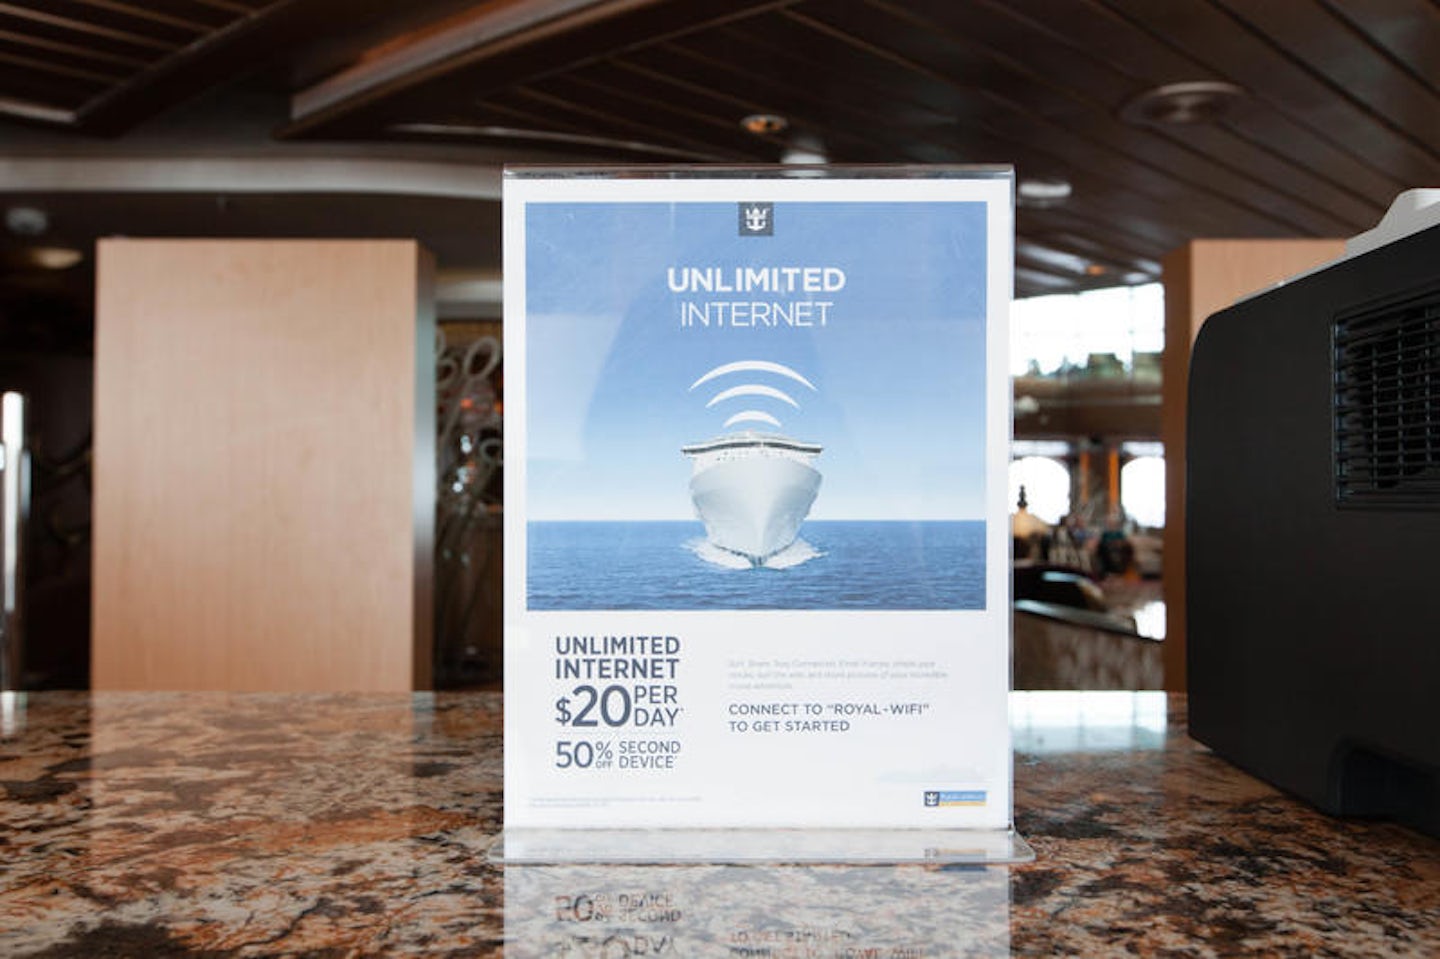 Internet Cafe on Grandeur of the Seas